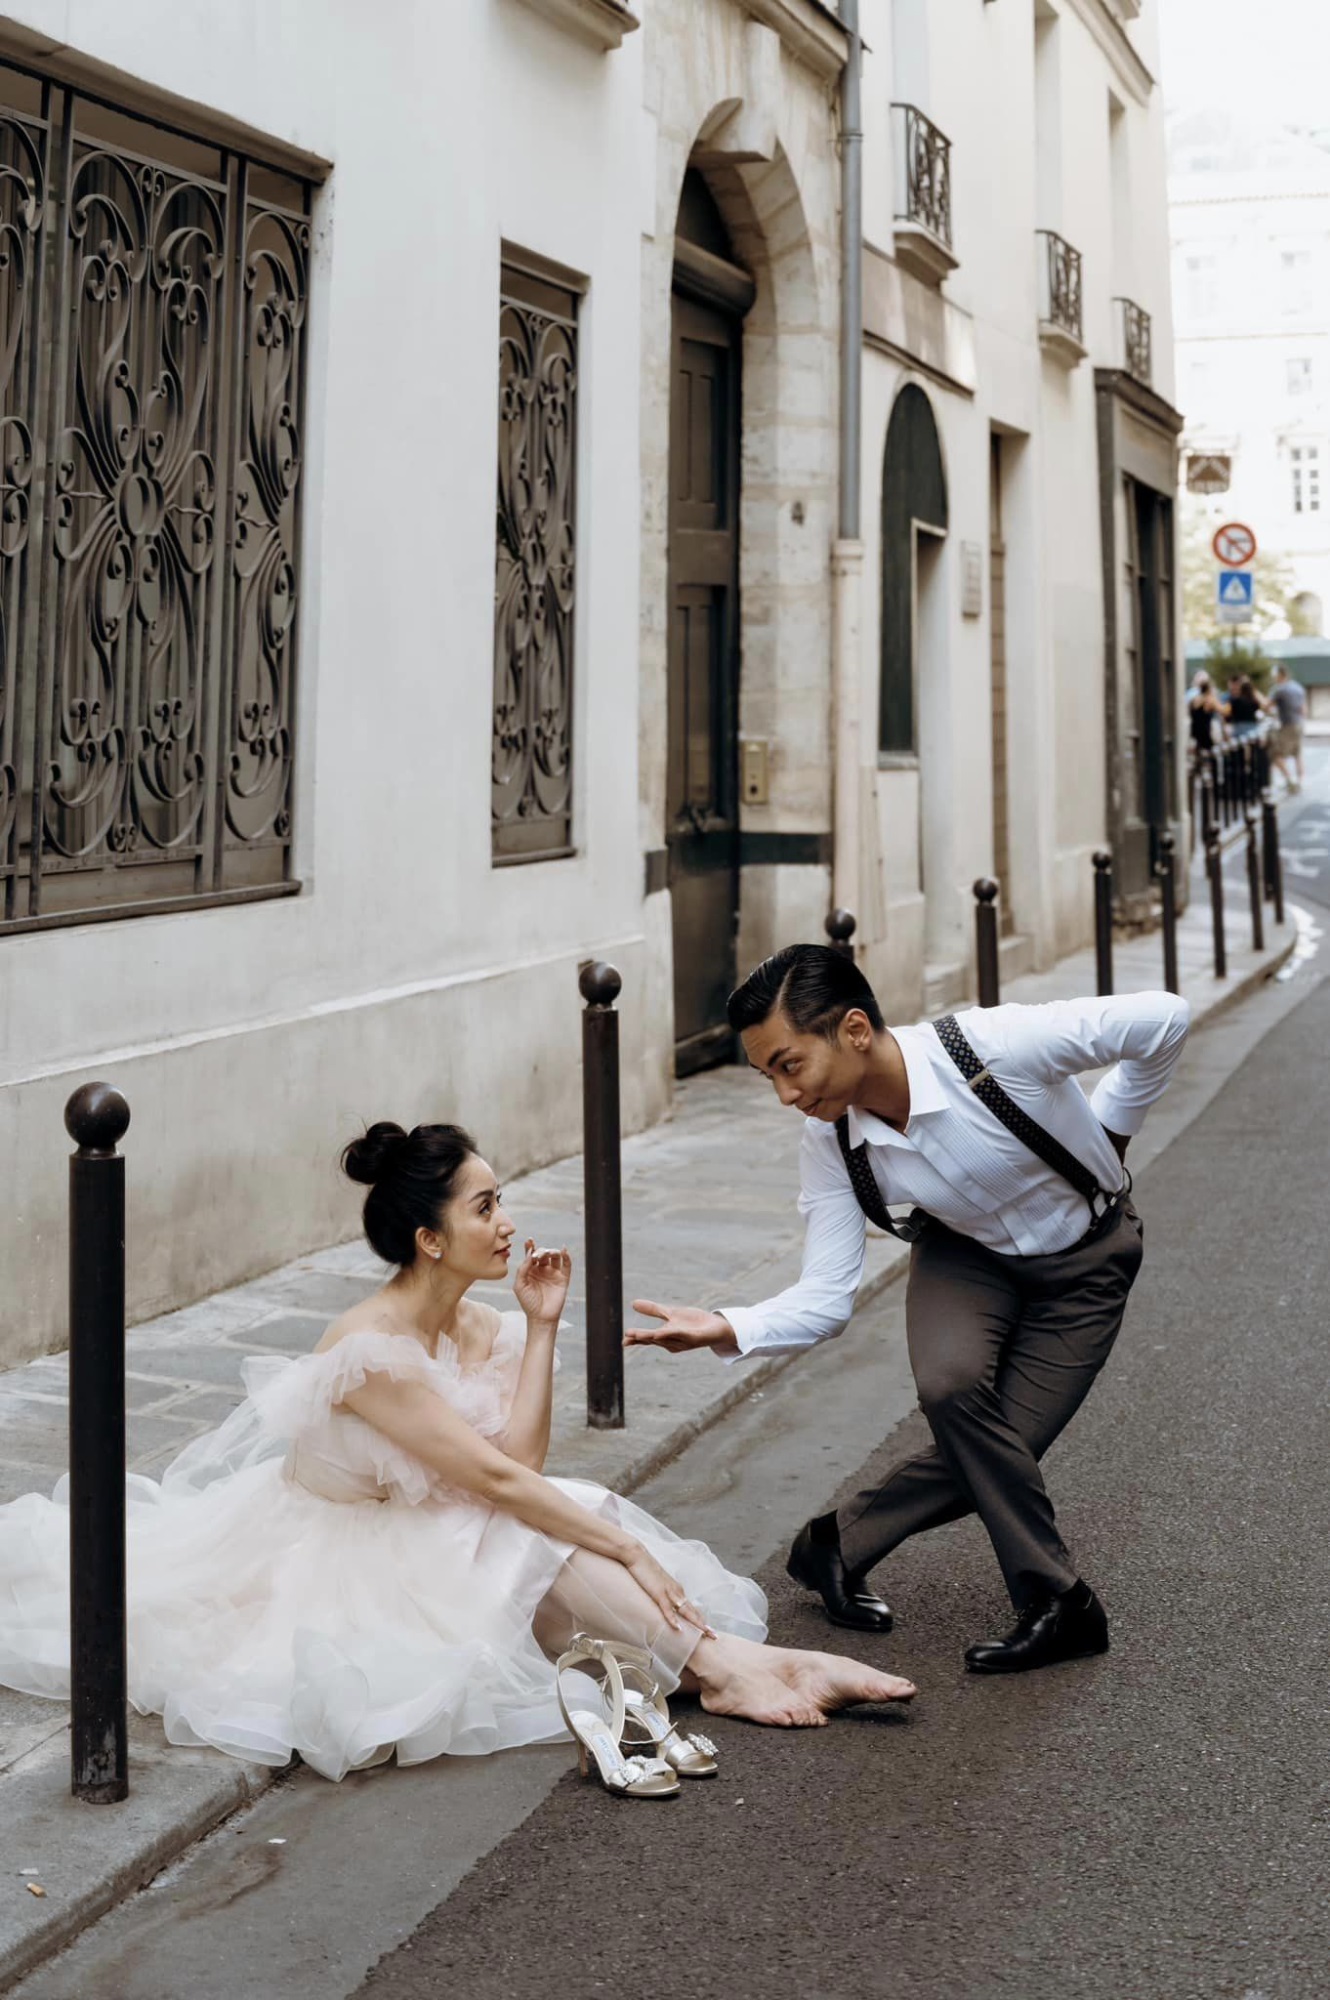 Phan Hiển và Khánh Thi tái hiện chuyện tình yêu gắn liền với nhảy múa trong bộ ảnh cưới chụp ở Pháp - Ảnh 8